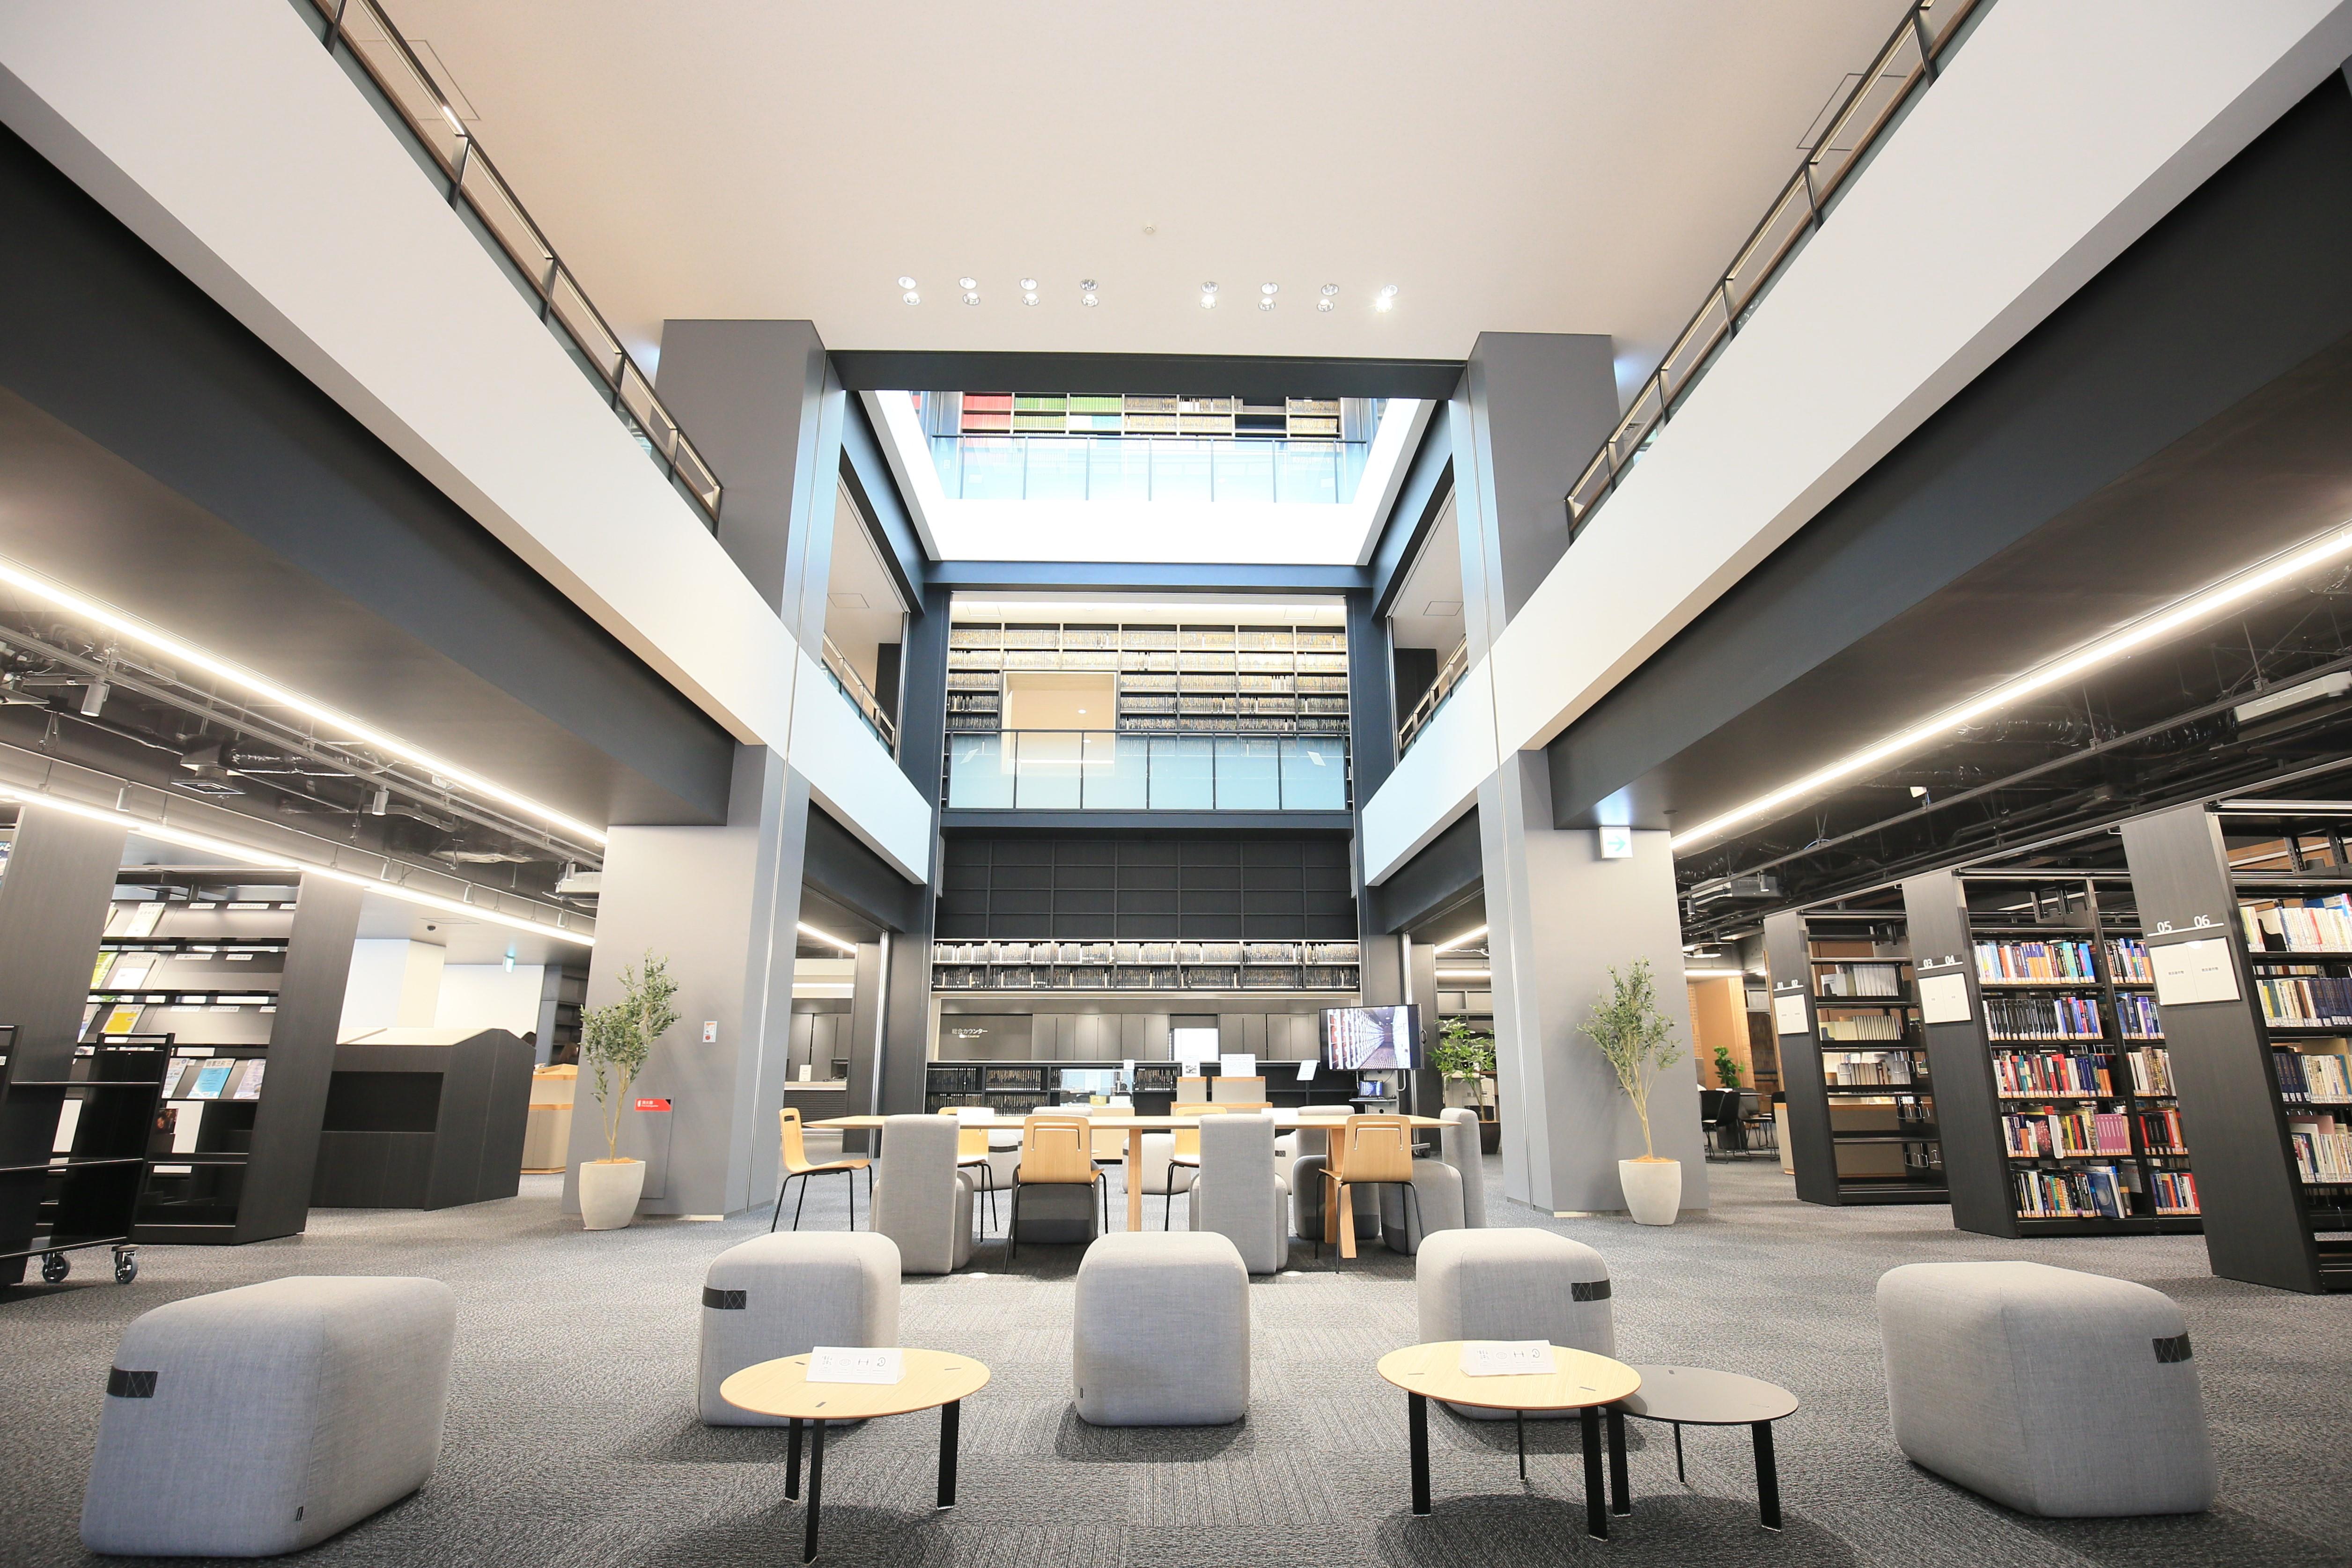 「神奈川大学図書館がリニューアルオープン」～神奈川県最大級150万冊以上の蔵書数、年間40万人が利用する図書館がリニューアル。横浜・神奈川の資料も充実、IT化により学修支援を拡充～